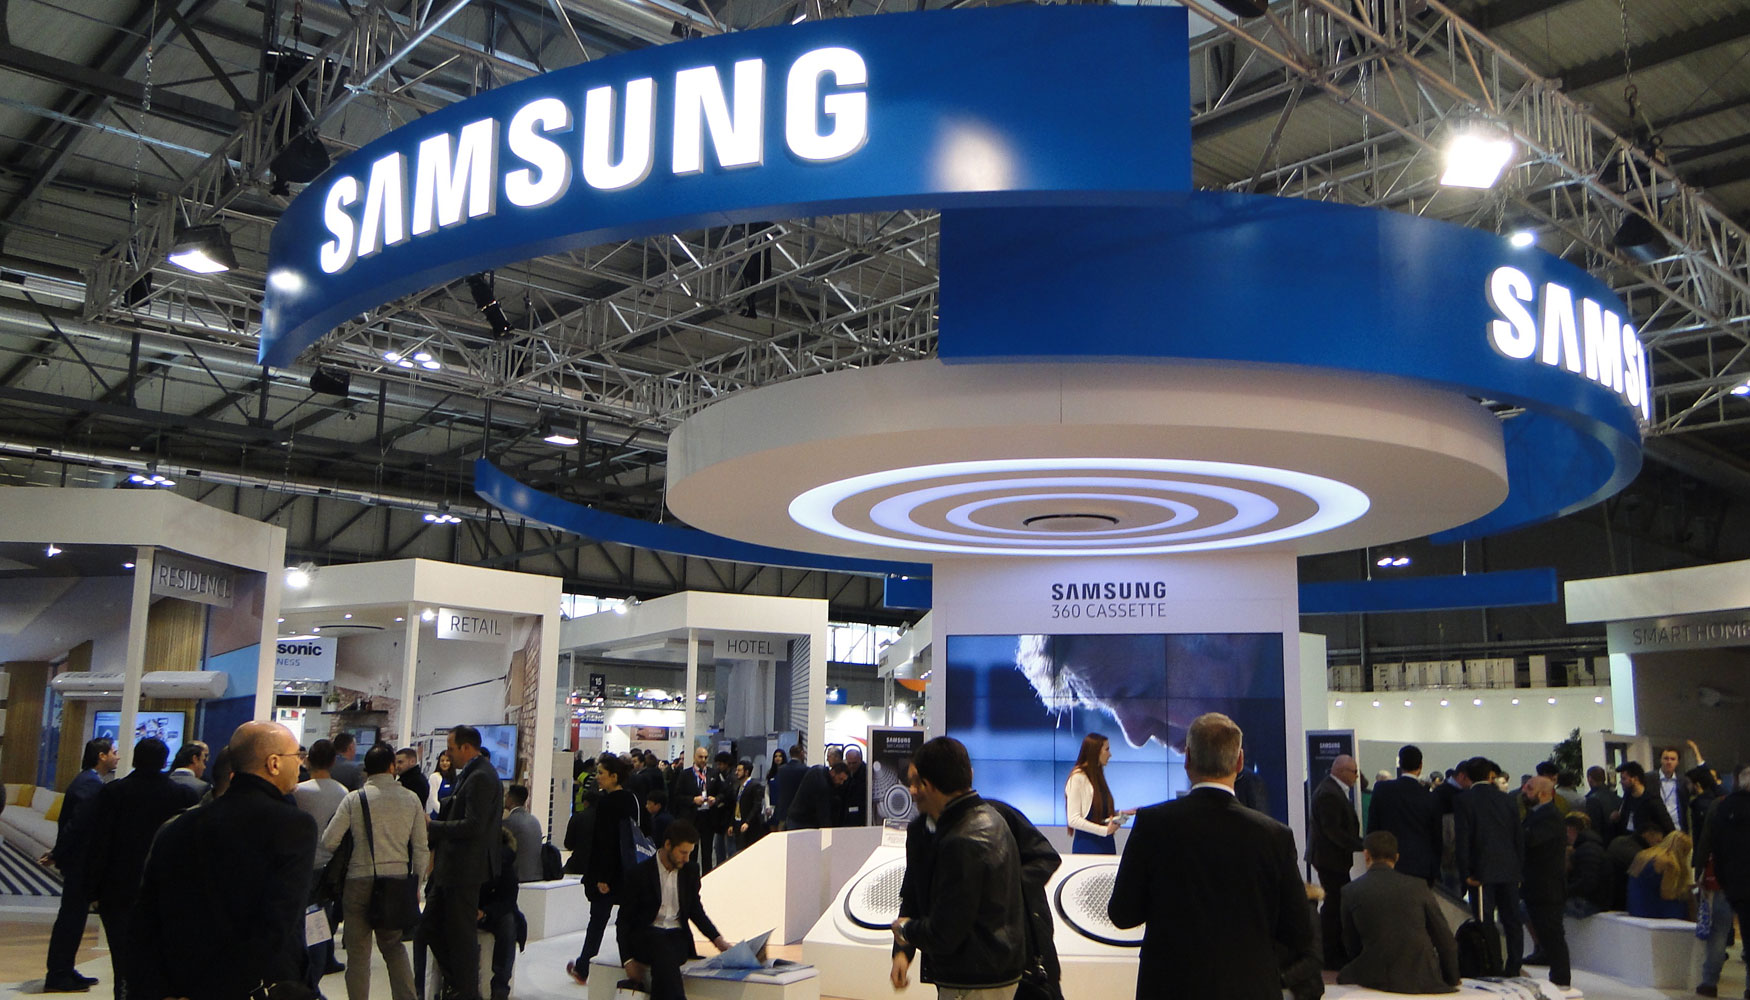 Stand de Samsung en Mostra Convegno Expocomfort 2016